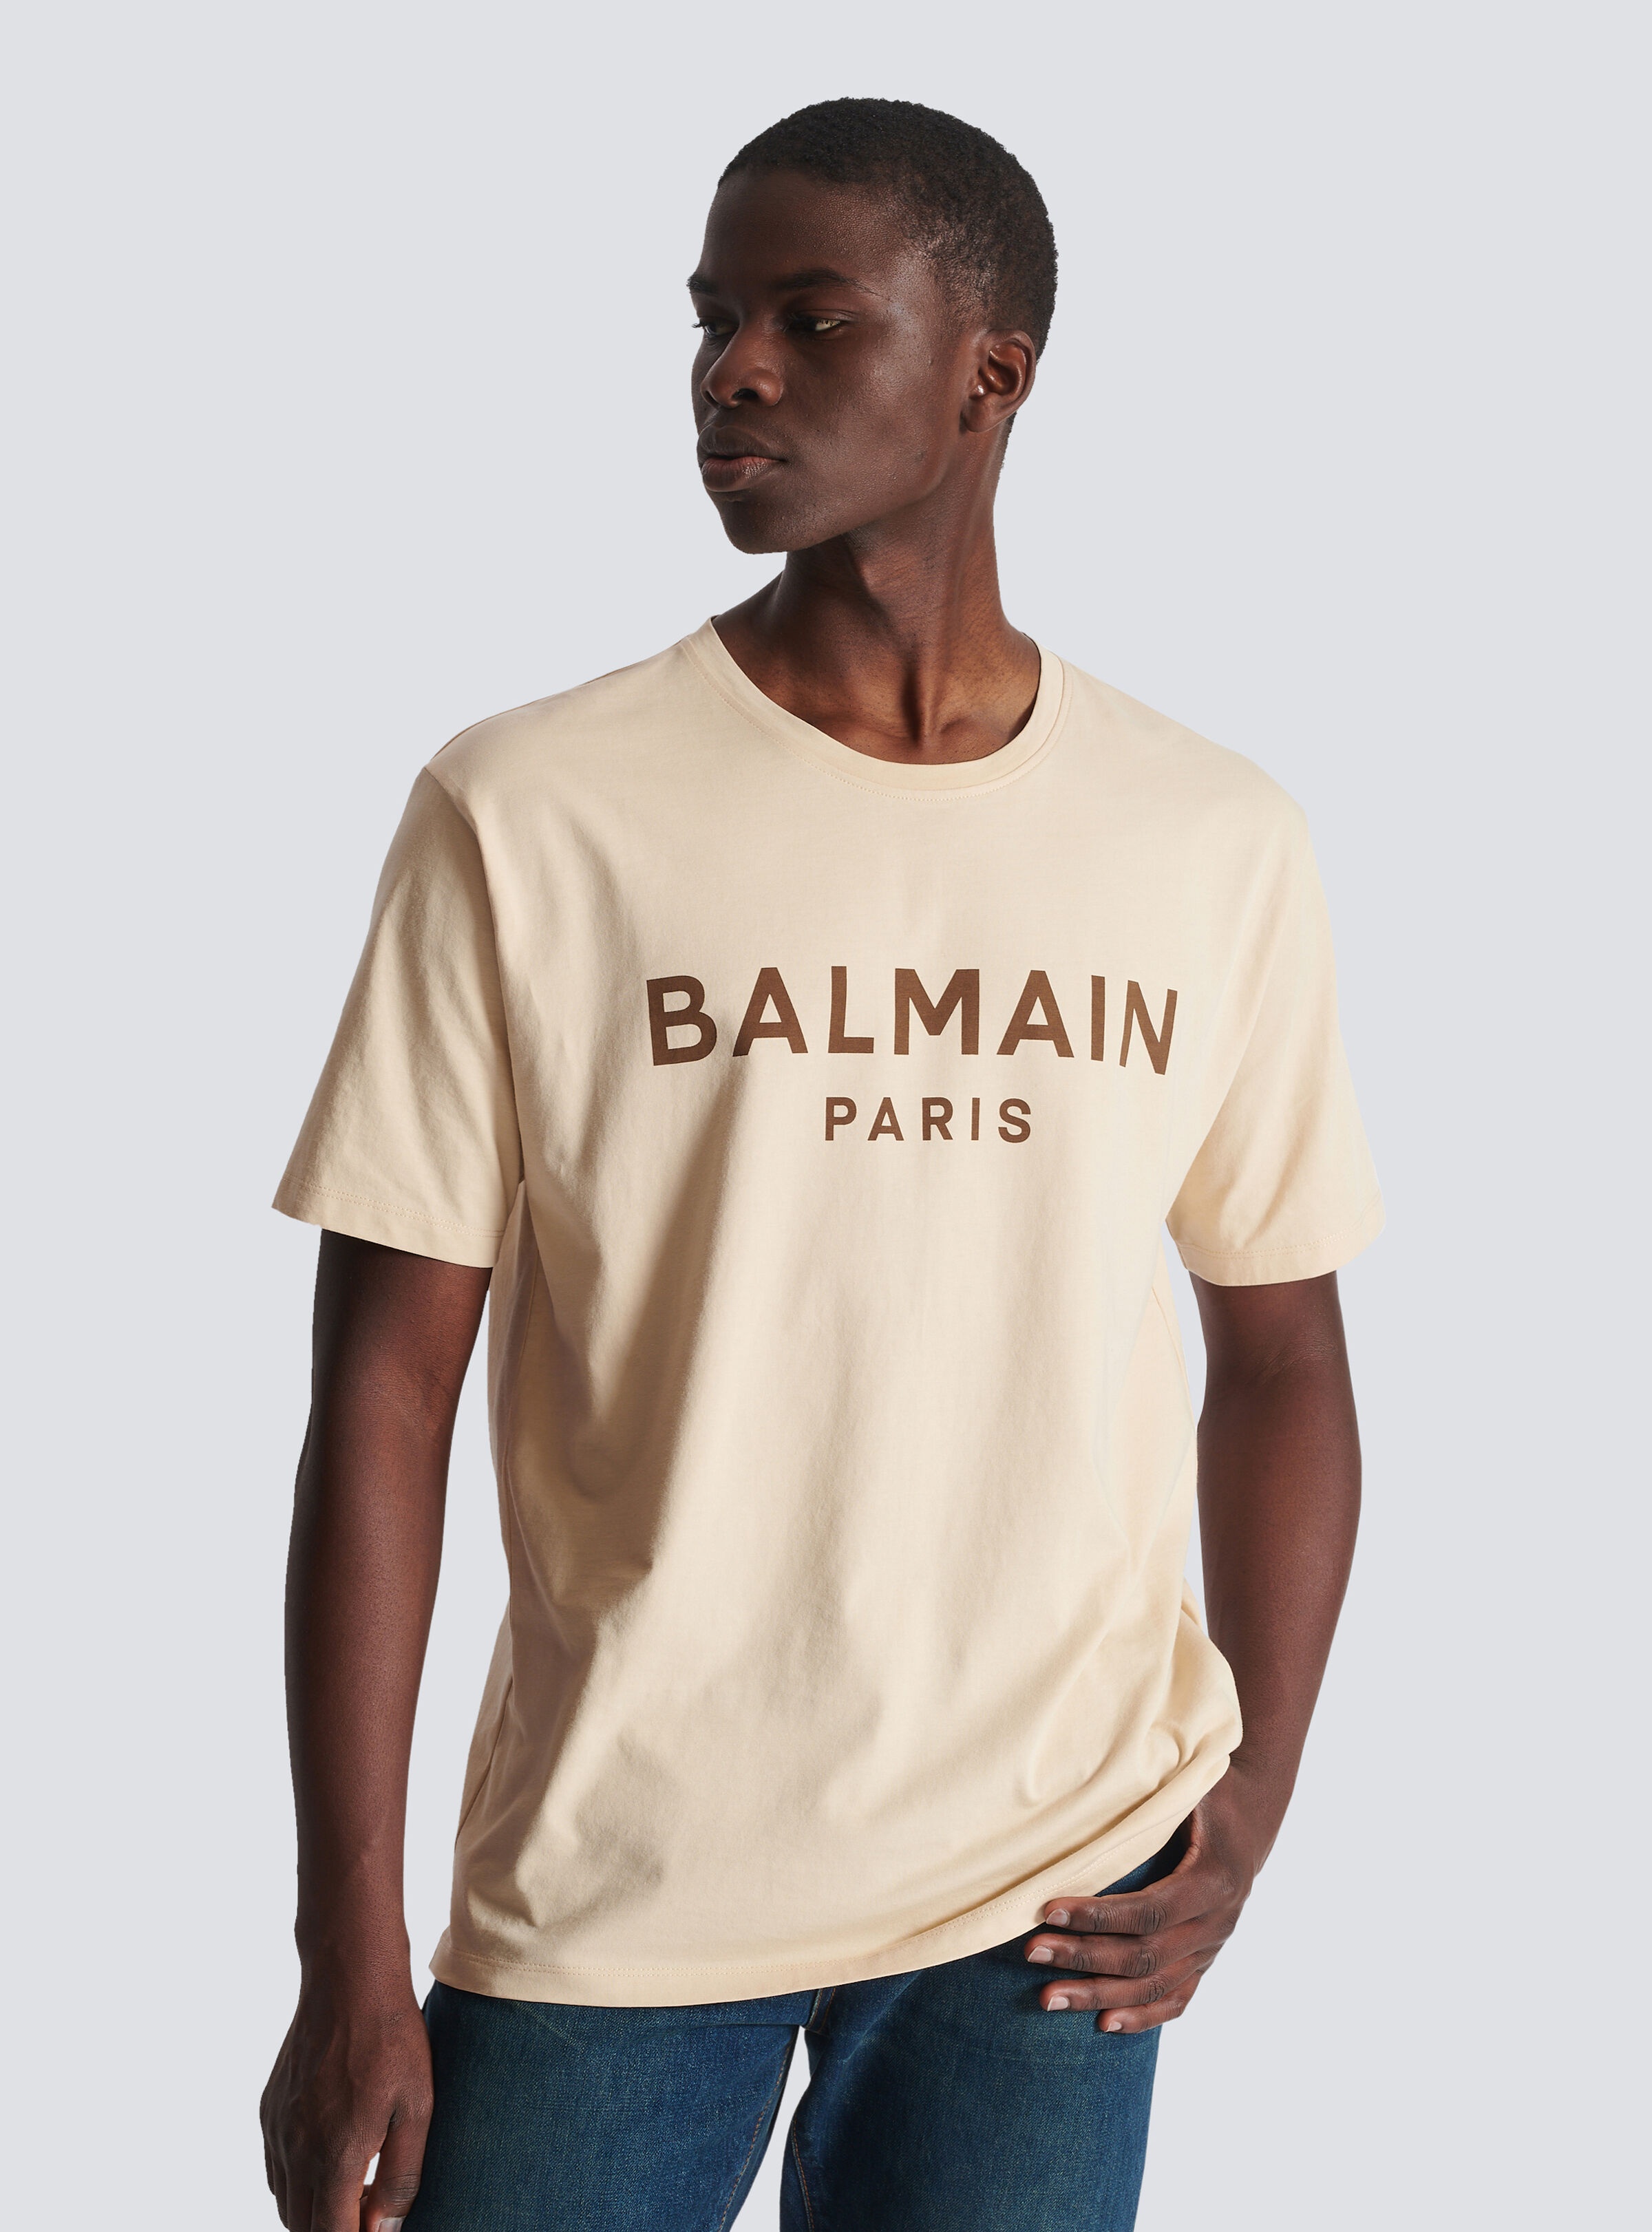 T-shirt with Balmain Paris print - 6